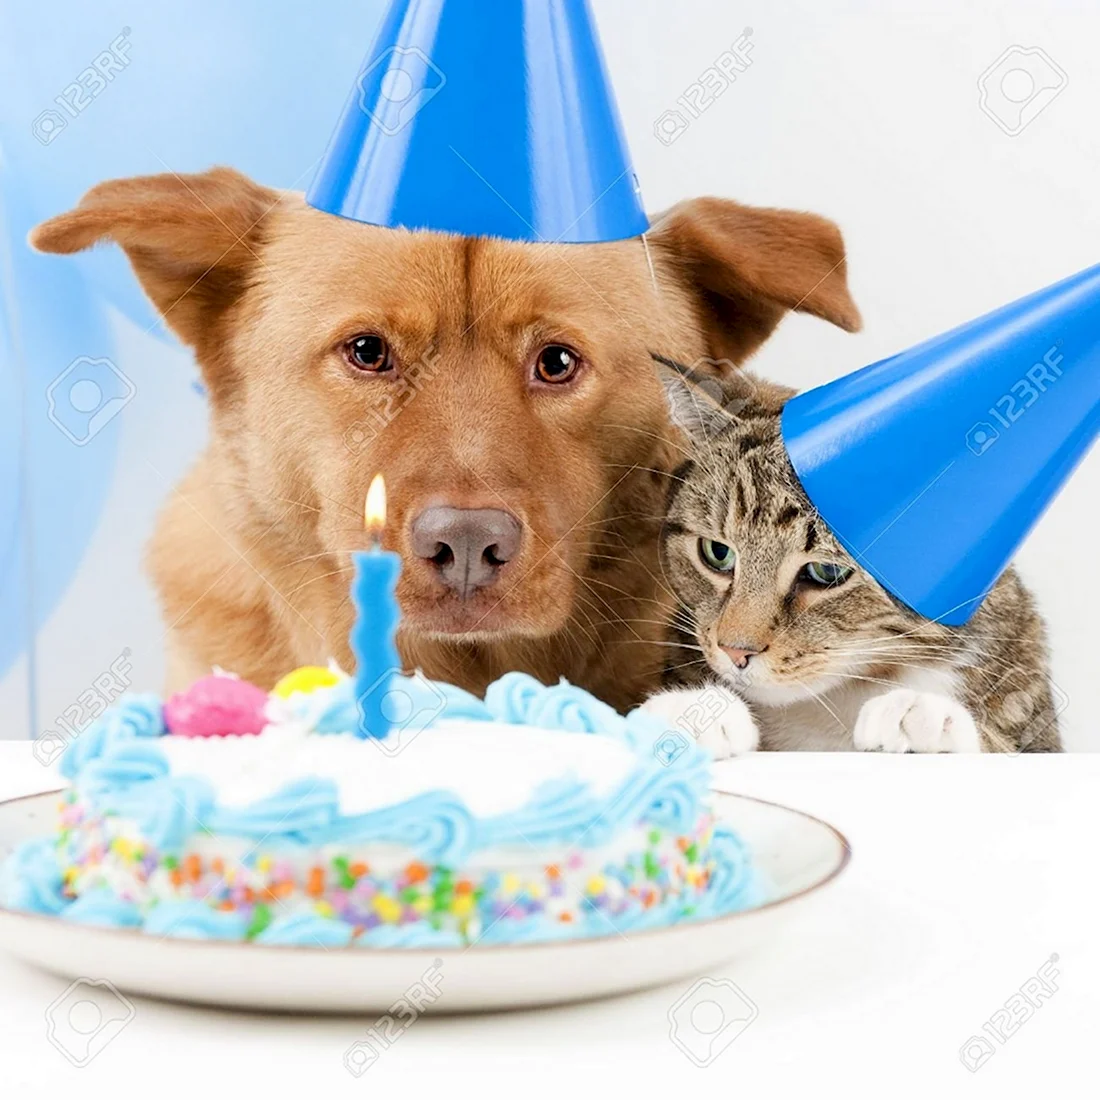 С днем рождения ветеринару